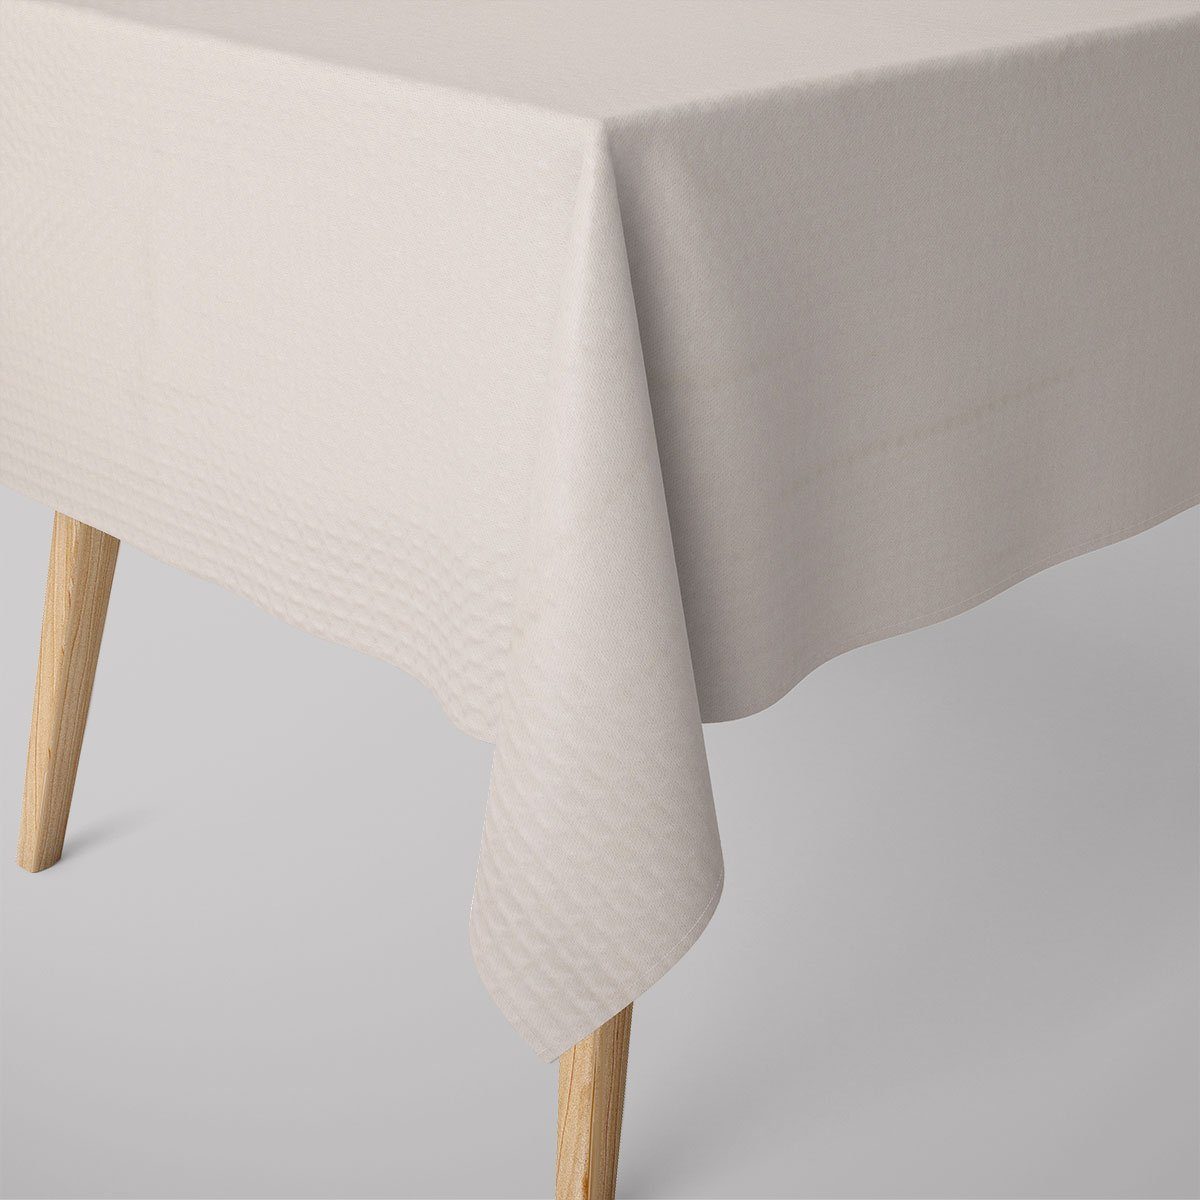 SCHÖNER LEBEN. Tischdecke SCHÖNER LEBEN. Tischdecke Baumwollstoff Reliefstruktur ecru, handmade | Tischdecken